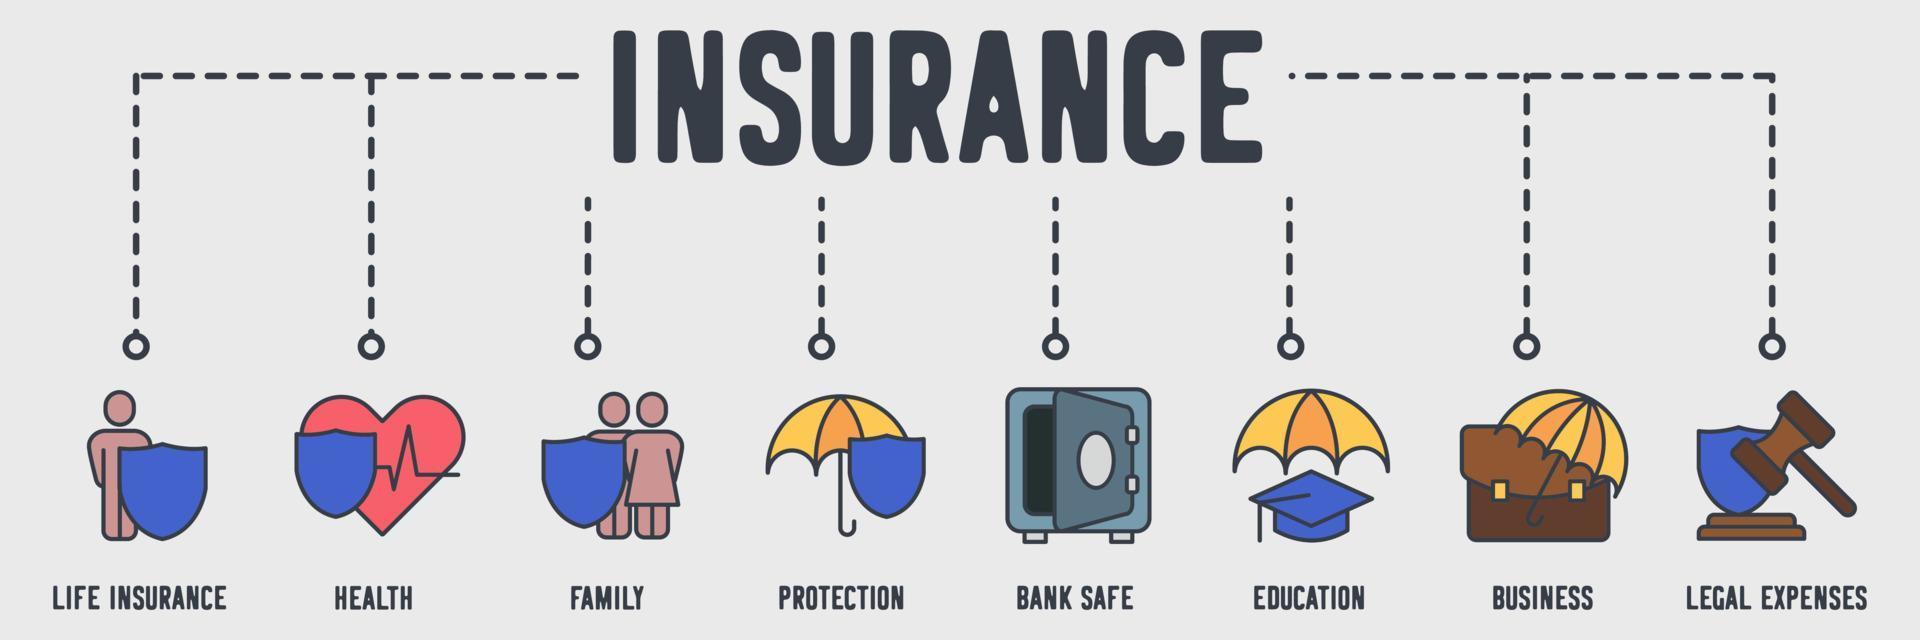 verzekering banner web pictogram. levensverzekering, gezondheid, familie, bescherming, bankkluis, onderwijs, zaken, juridische kosten vector illustratie concept.